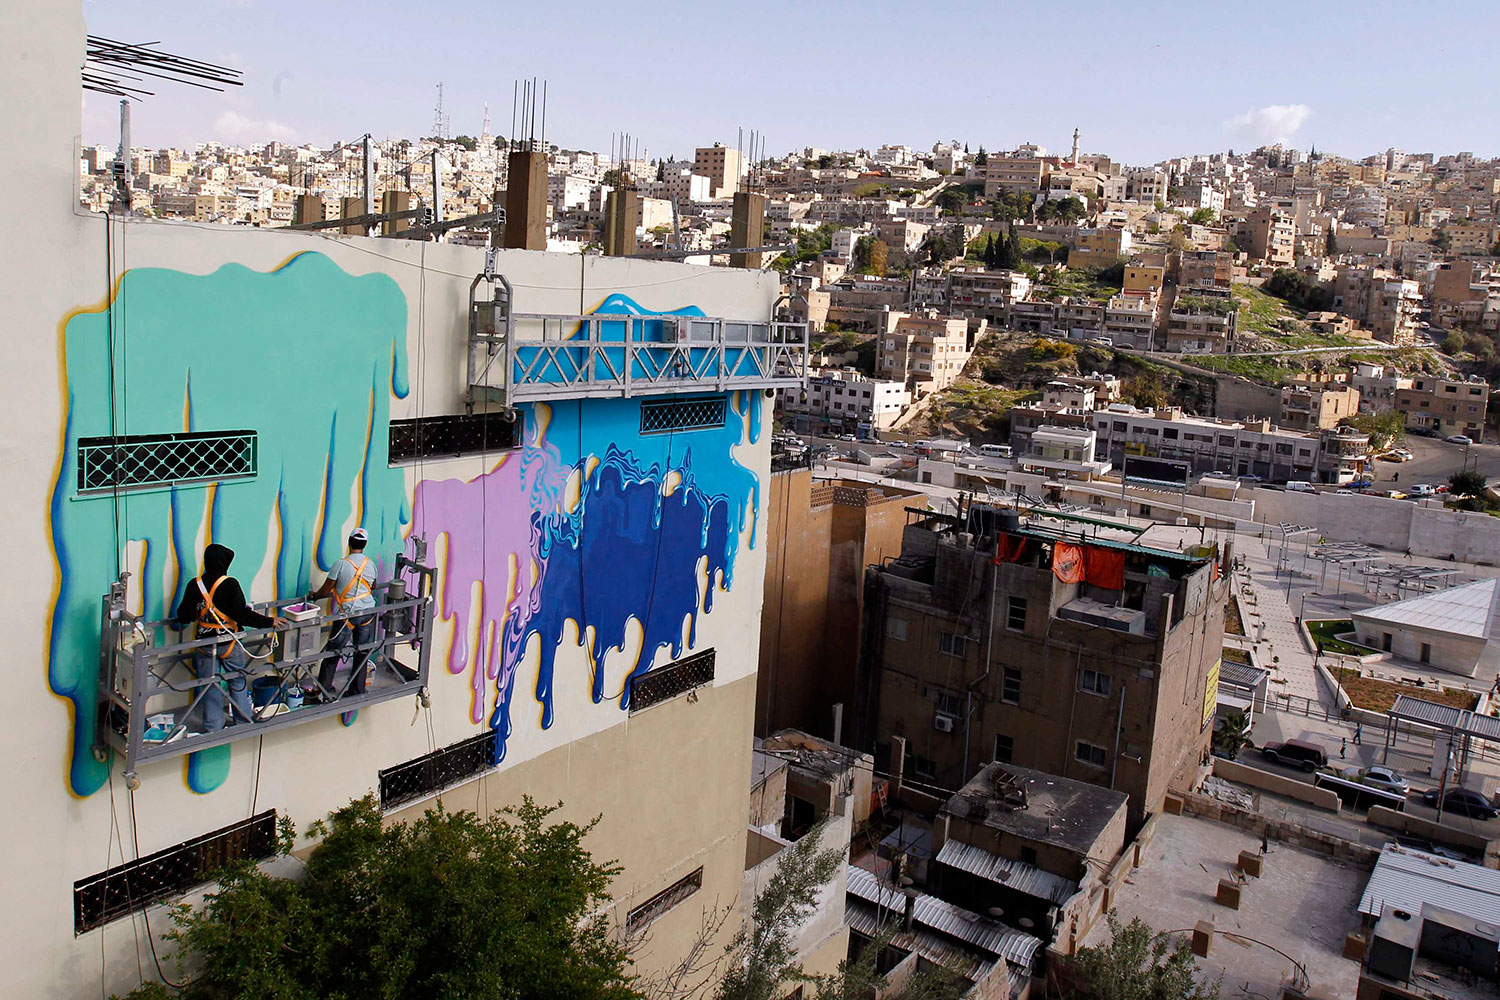 El proyecto "Arte para todos" viste de arte las calles de Ammán